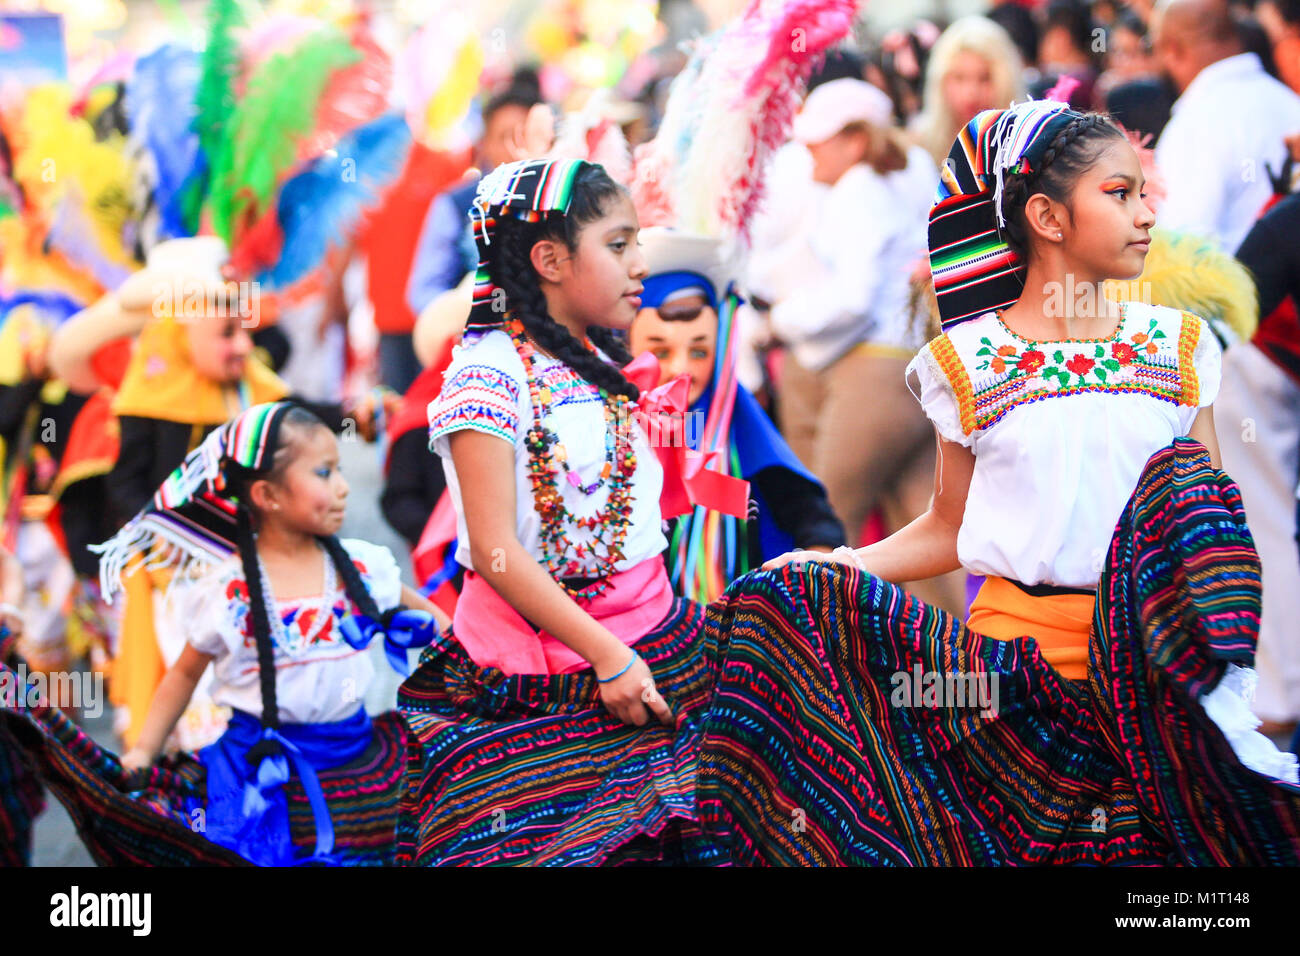 Mexican ragazze vestite con tradizionale messicana costumi folk gonna fatti a mano con modelli di messicano, carnevale messicano, solo uso editoriale Foto Stock